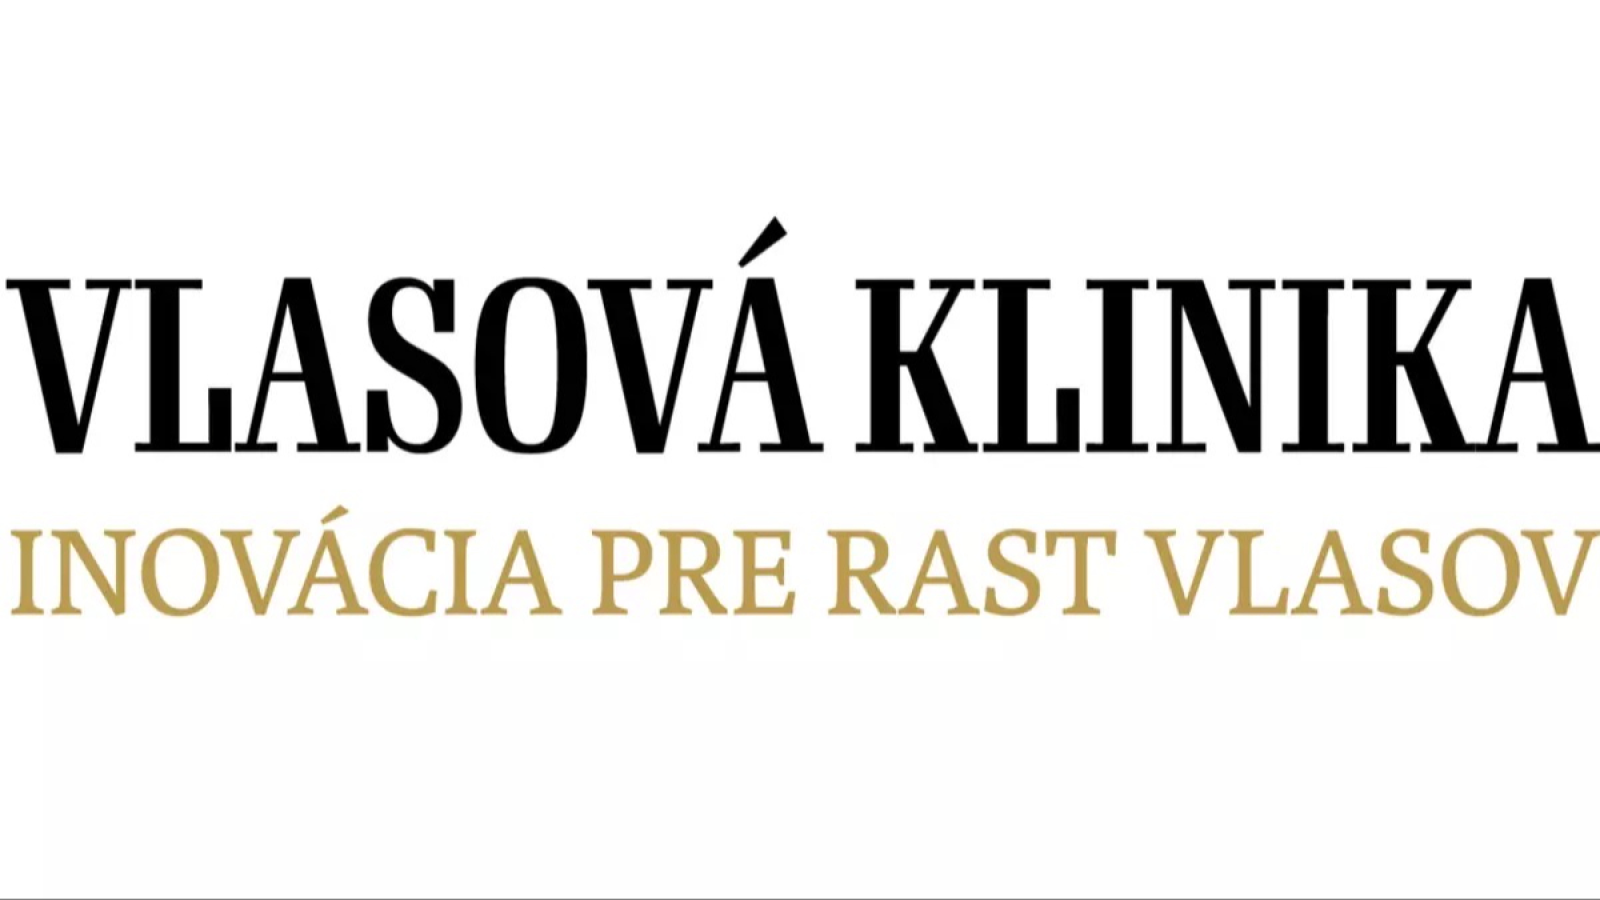 Vlasová Klinika Košice